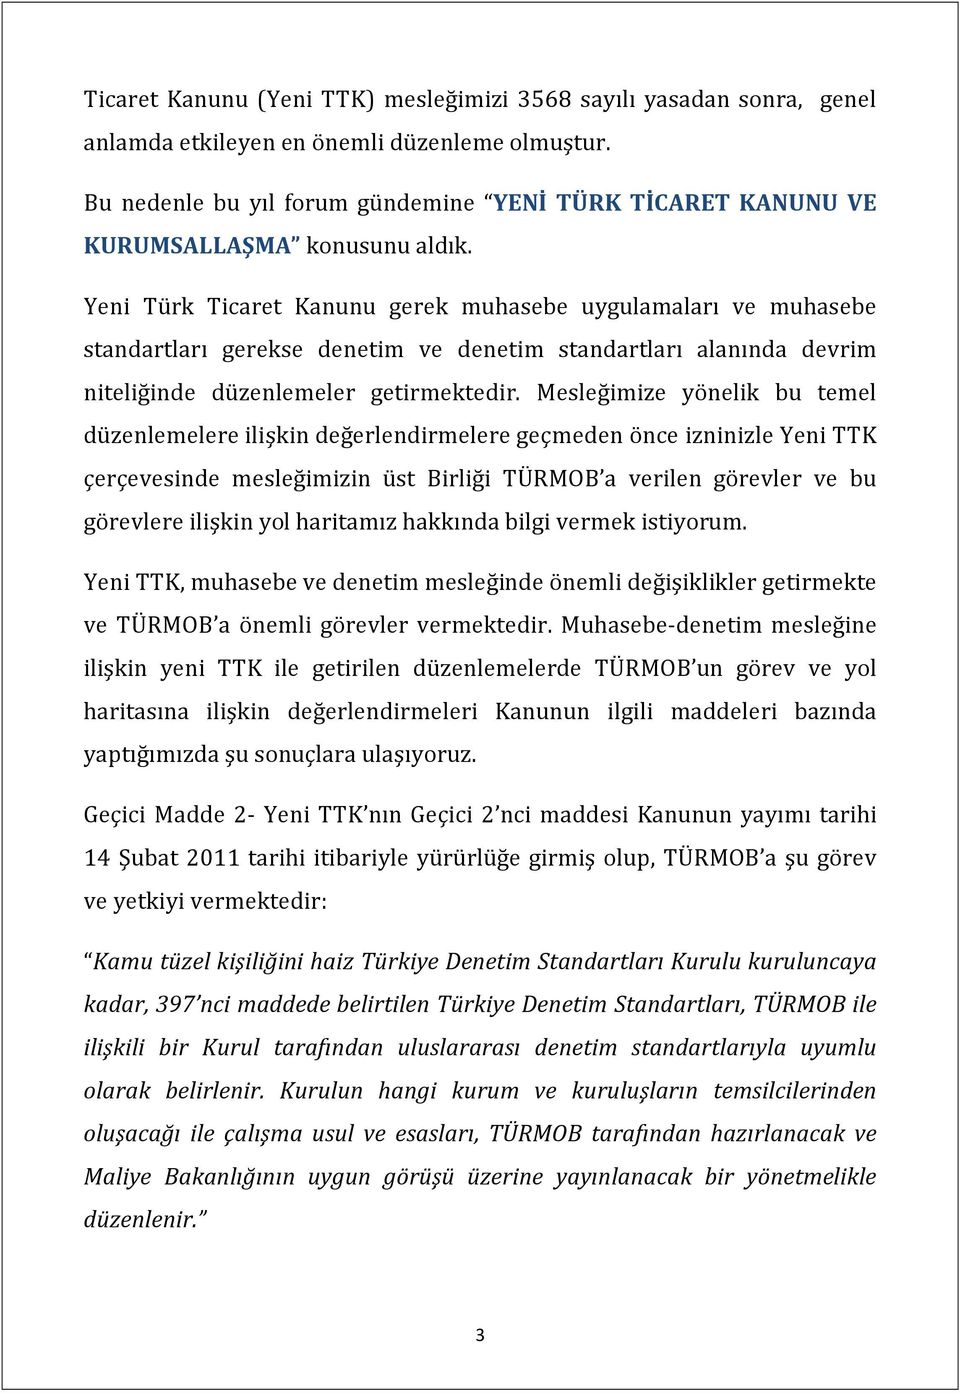 Yeni Türk Ticaret Kanunu gerek muhasebe uygulamaları ve muhasebe standartları gerekse denetim ve denetim standartları alanında devrim niteliğinde düzenlemeler getirmektedir.